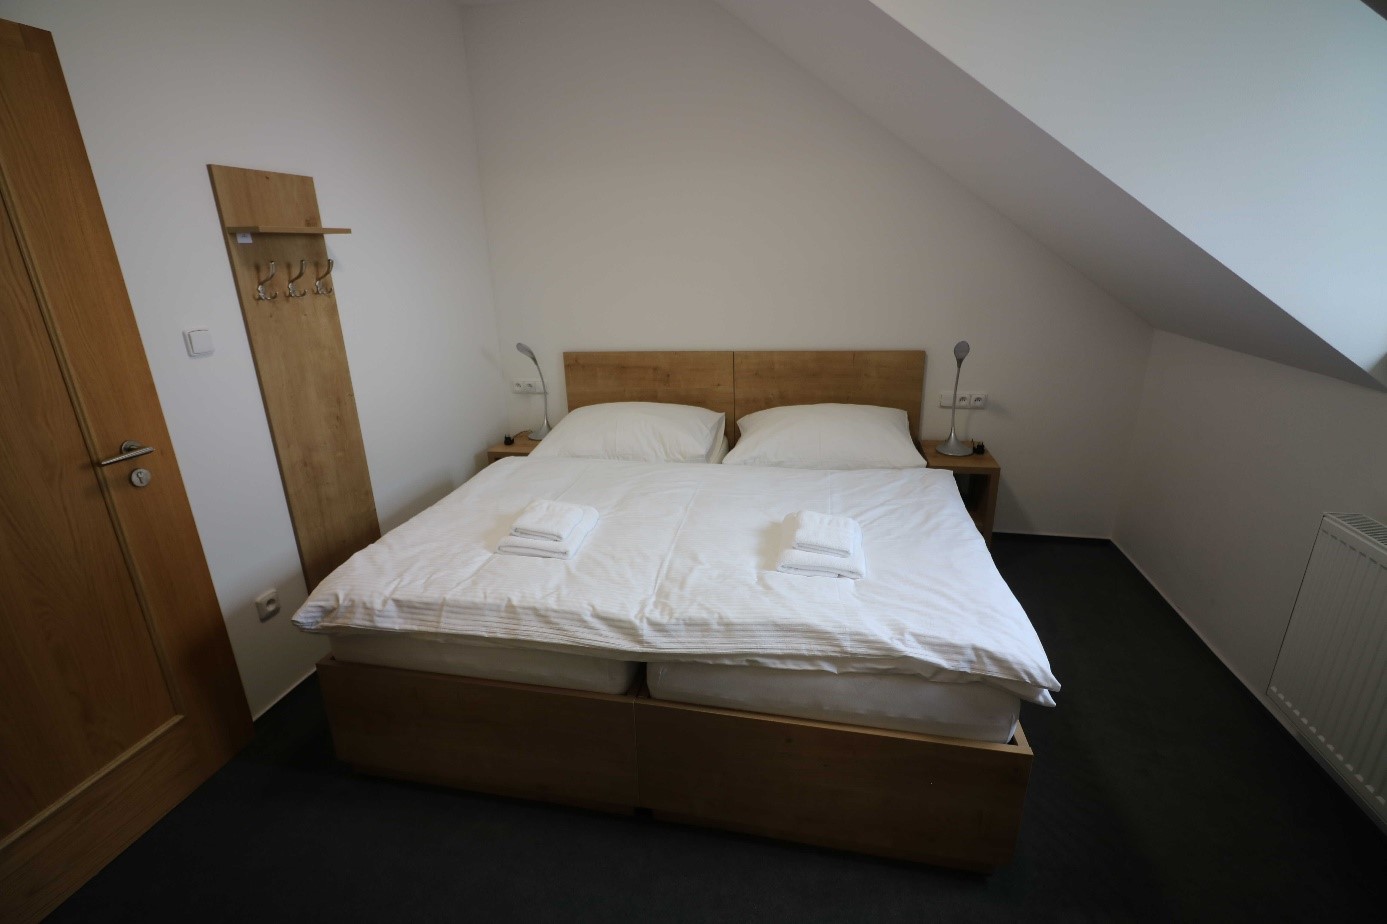 Králíky-Dolní Hedeč, Hotel Pilgrimage House - Pokoj s manželskou postelí